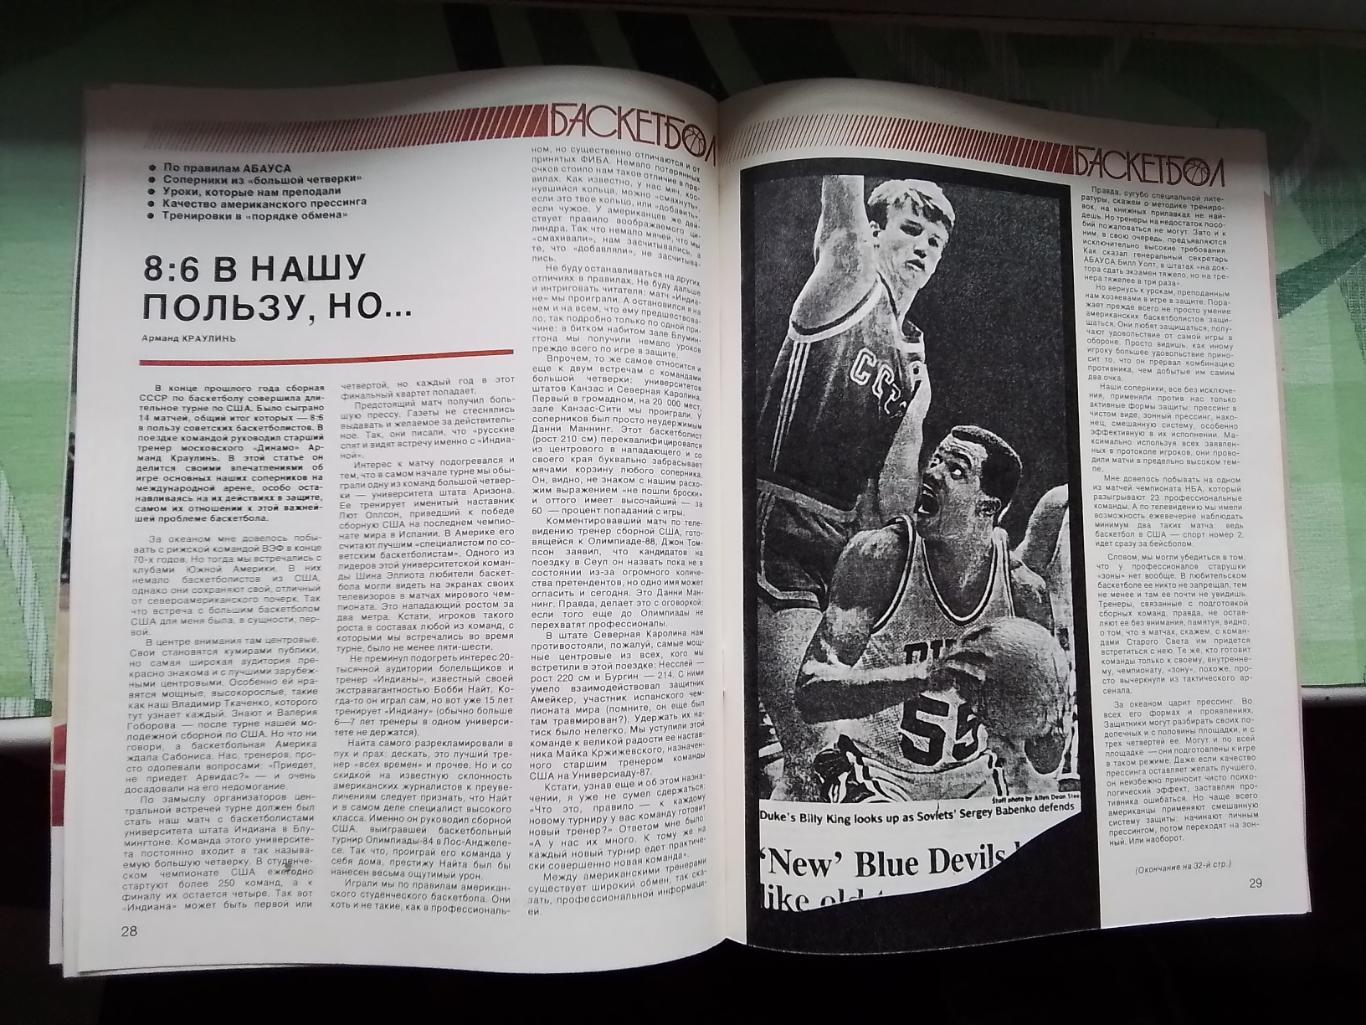 Журнал Спортивные игры 1987 3 Каунас обладатель межконт Кубка М Якушин ДМ - НБА 3